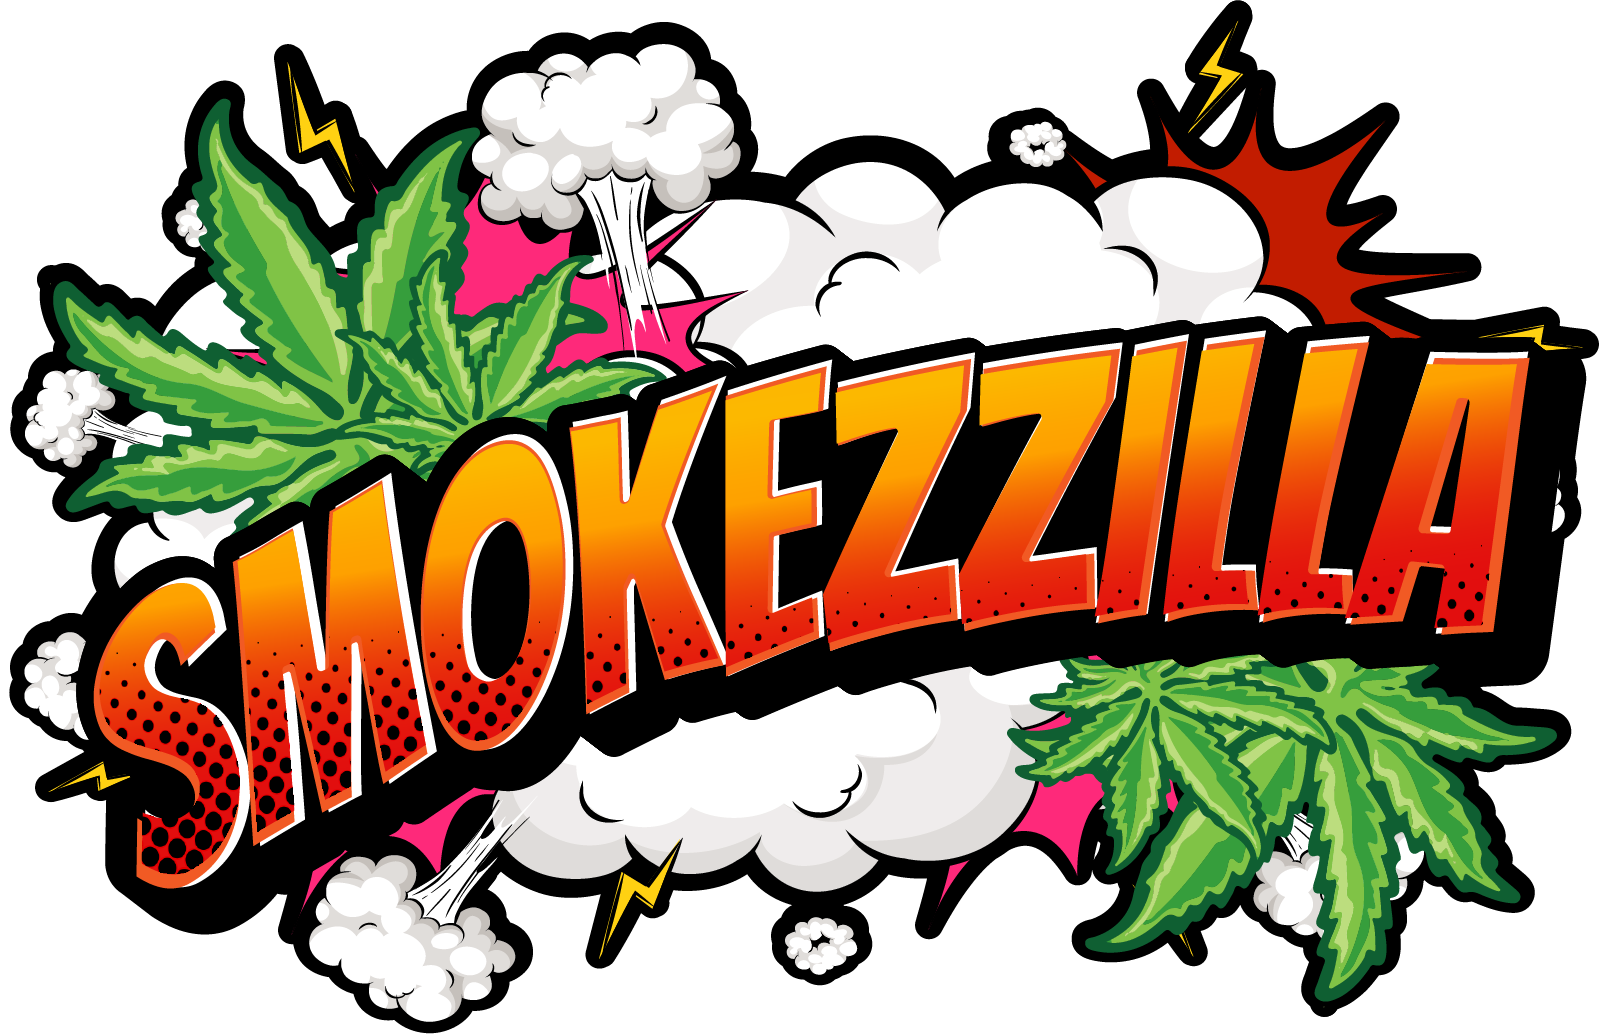 Smokezzilla.com